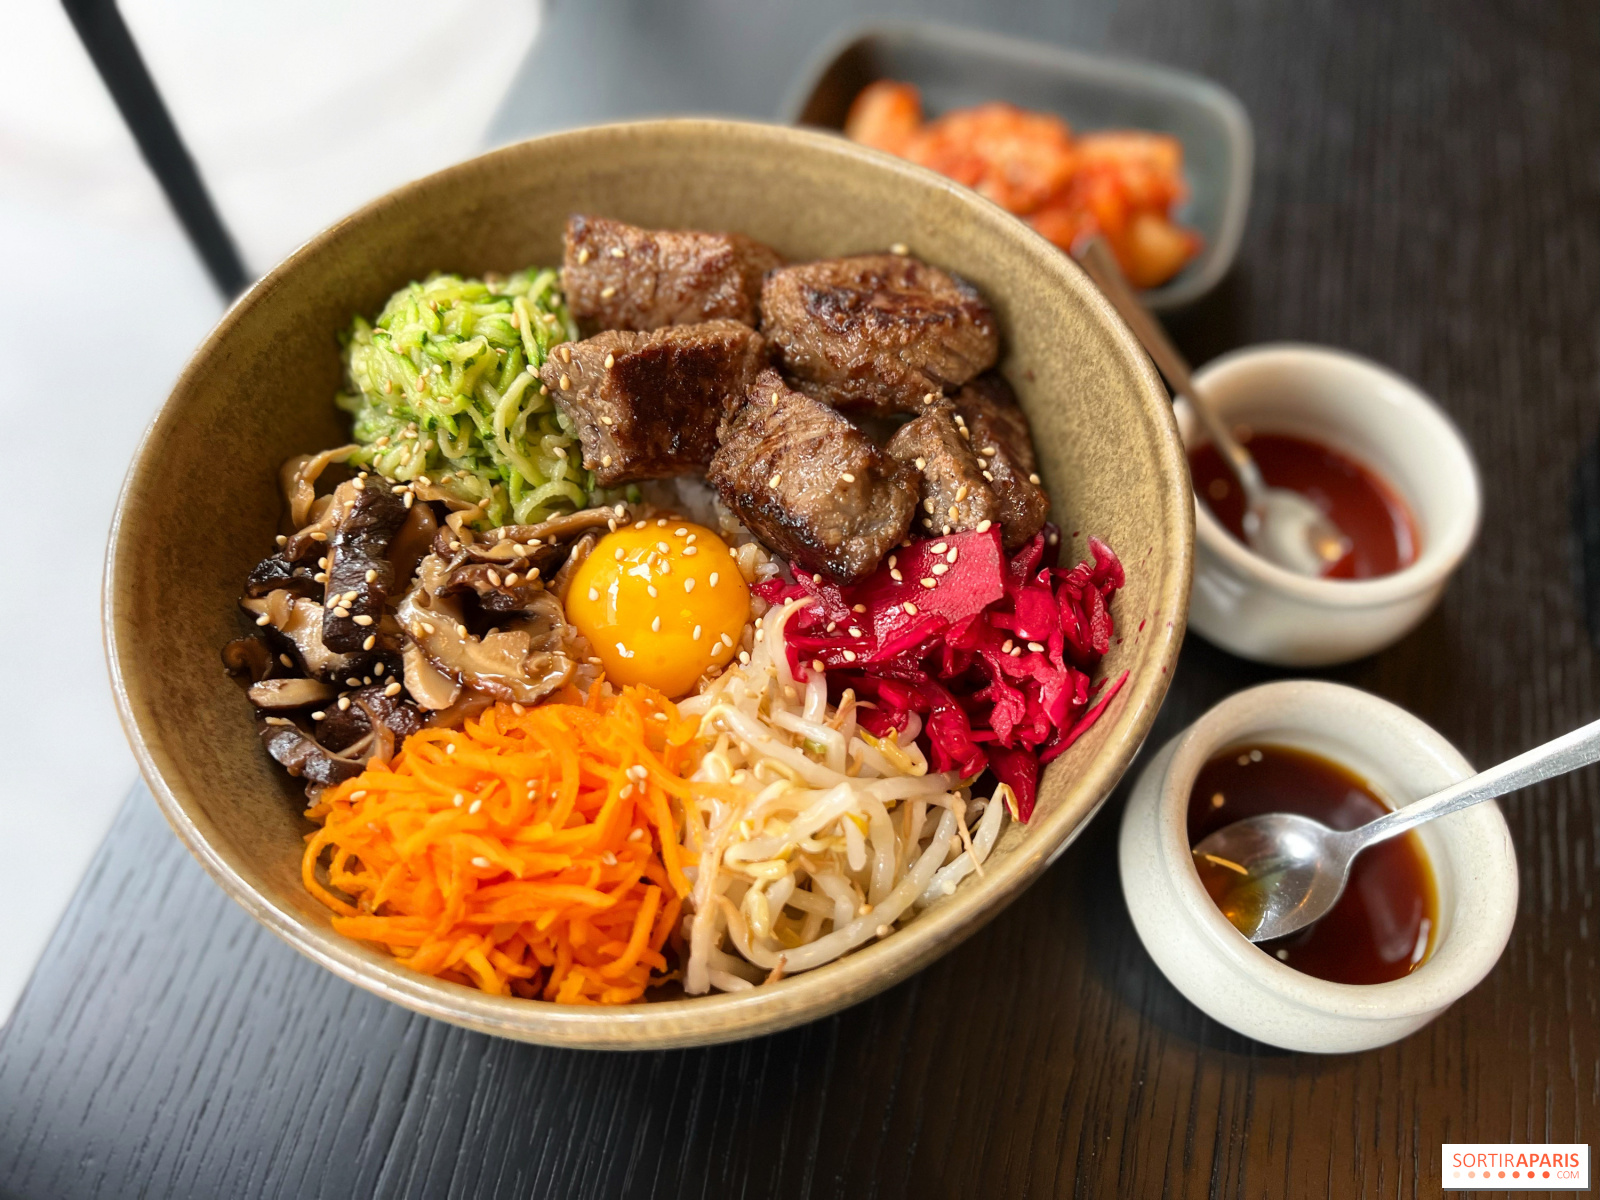 Louis Vuitton Seoul set to open pop-up vegetarian restaurant